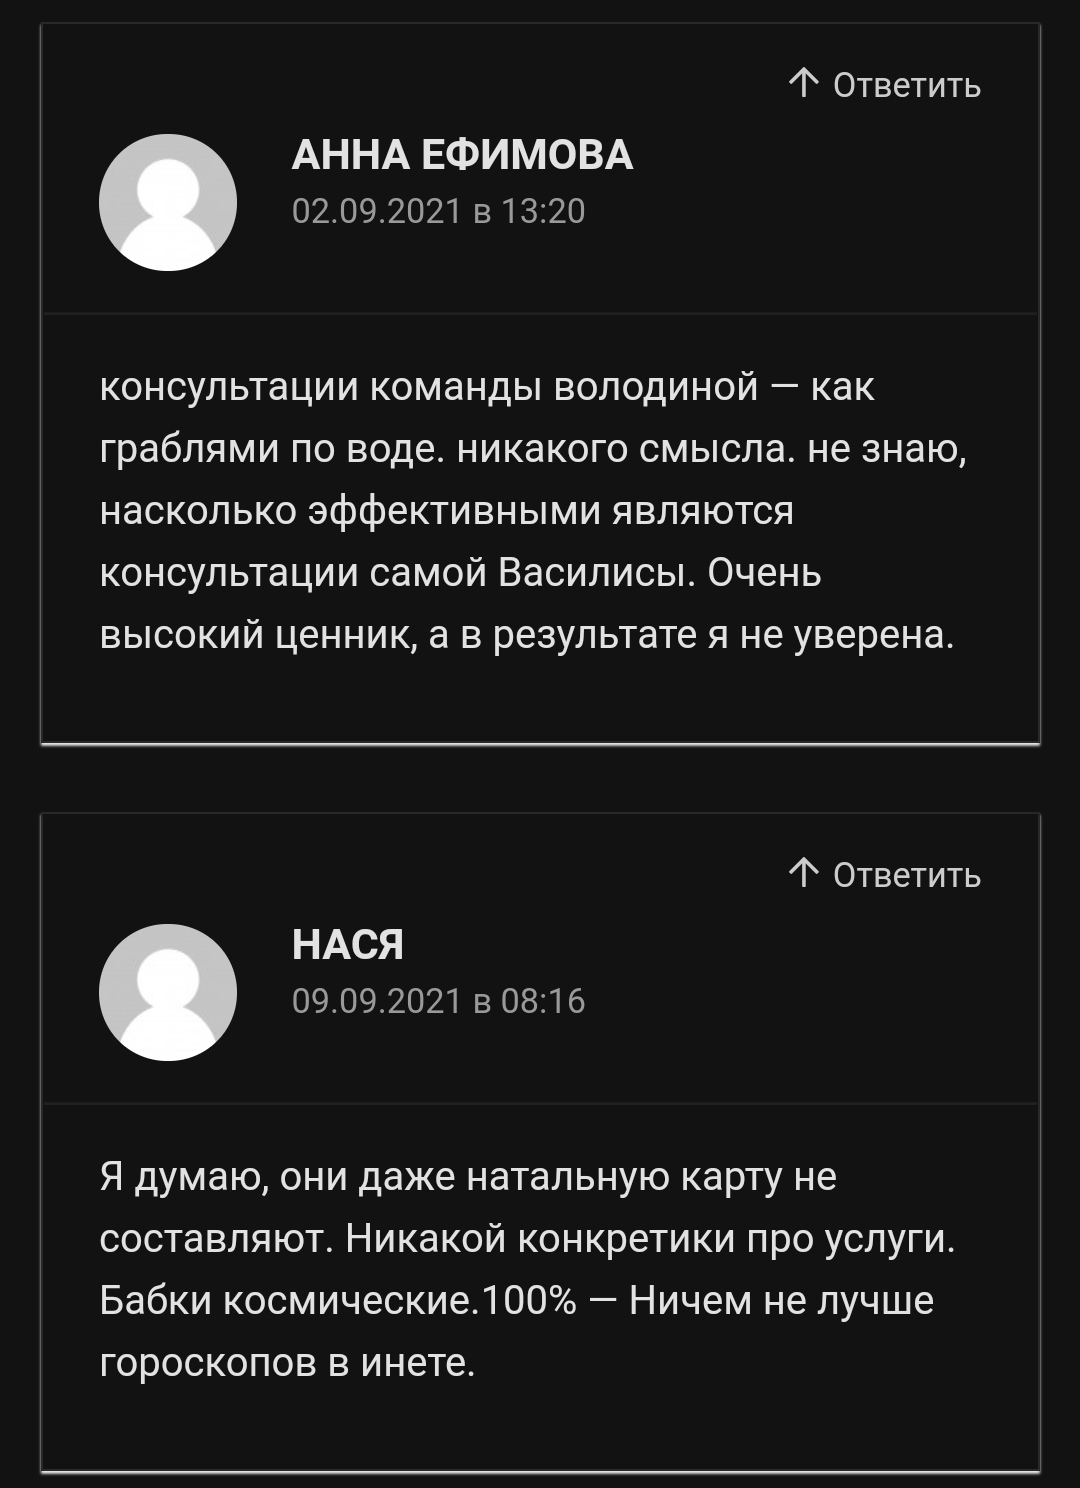 Астролог Василиса Володина отзывы